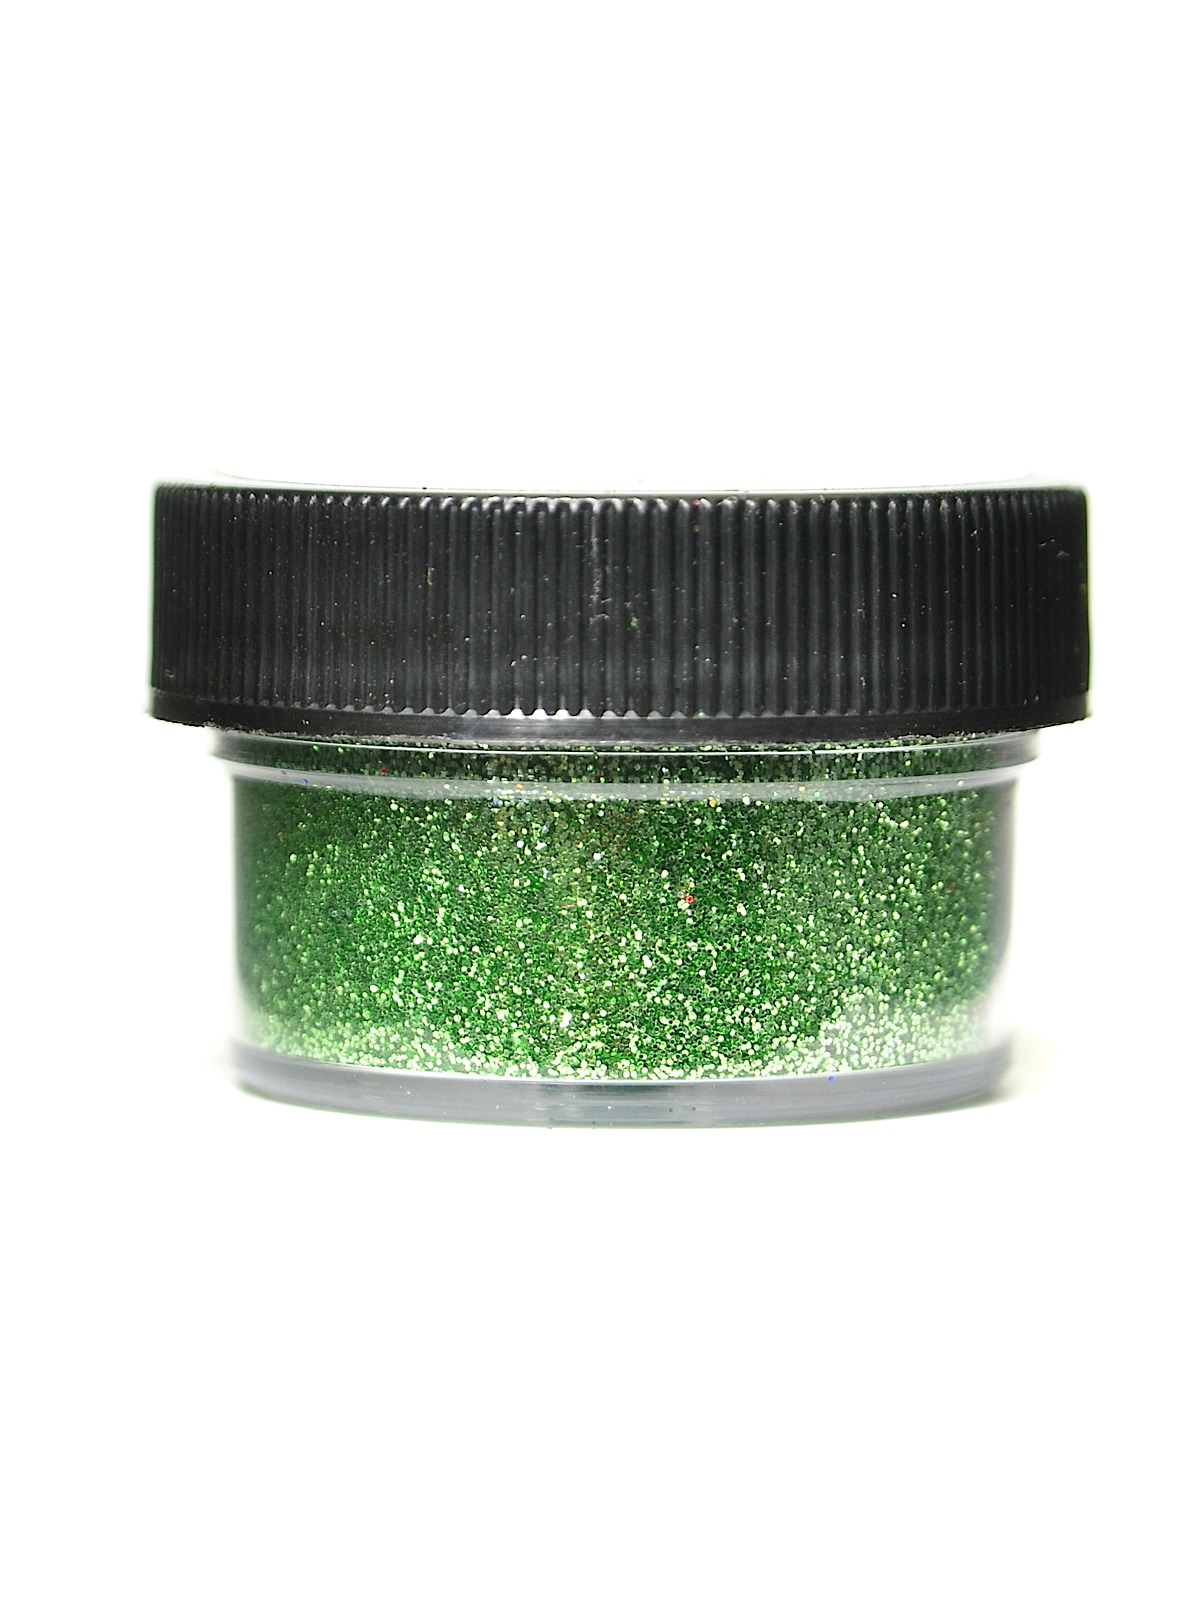 Ultrafine Opaque Glitter Leaf 1 2 Oz. Jar